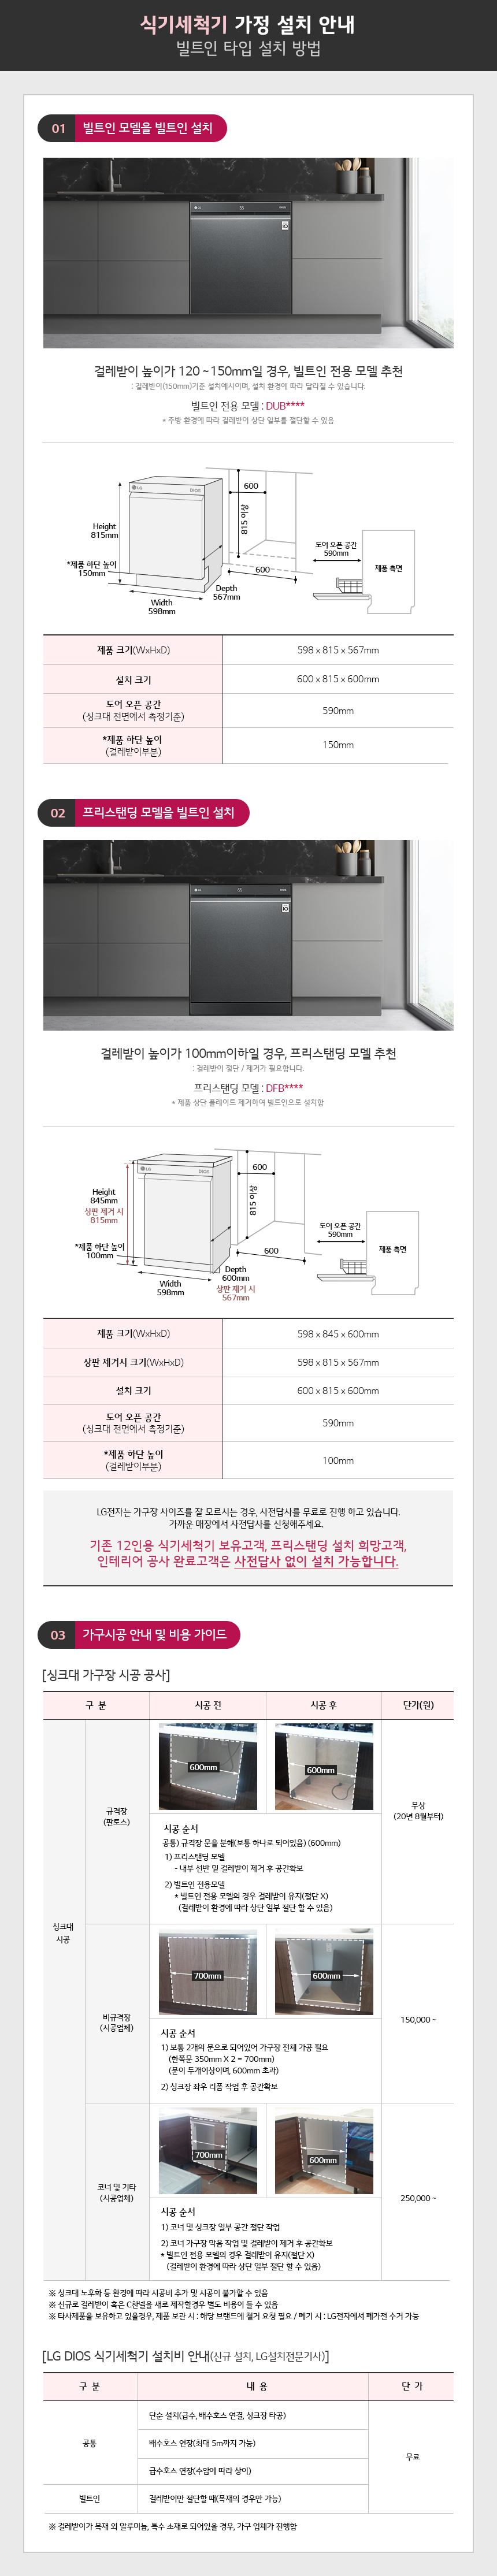 LG DIOS 식기세척기 가정 설치 안내 배너 (빌트인 타입)